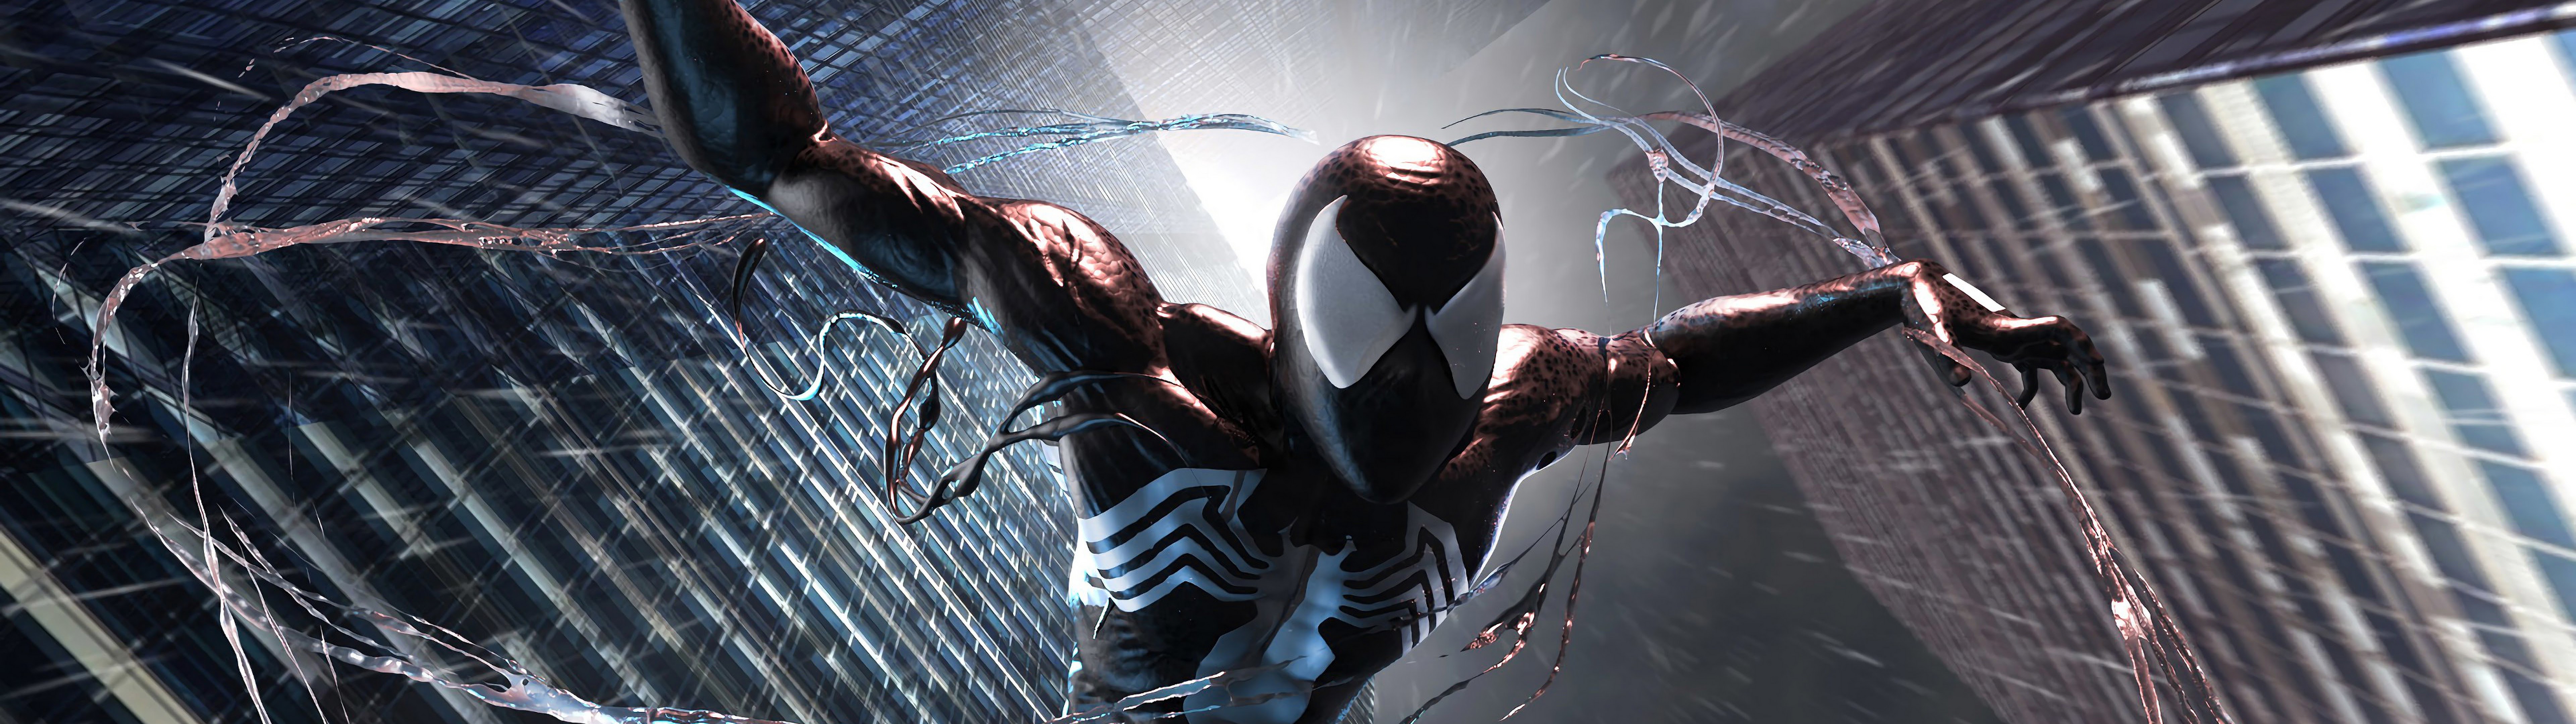 24 Symbiote SpiderMan Wallpapers  WallpaperSafari